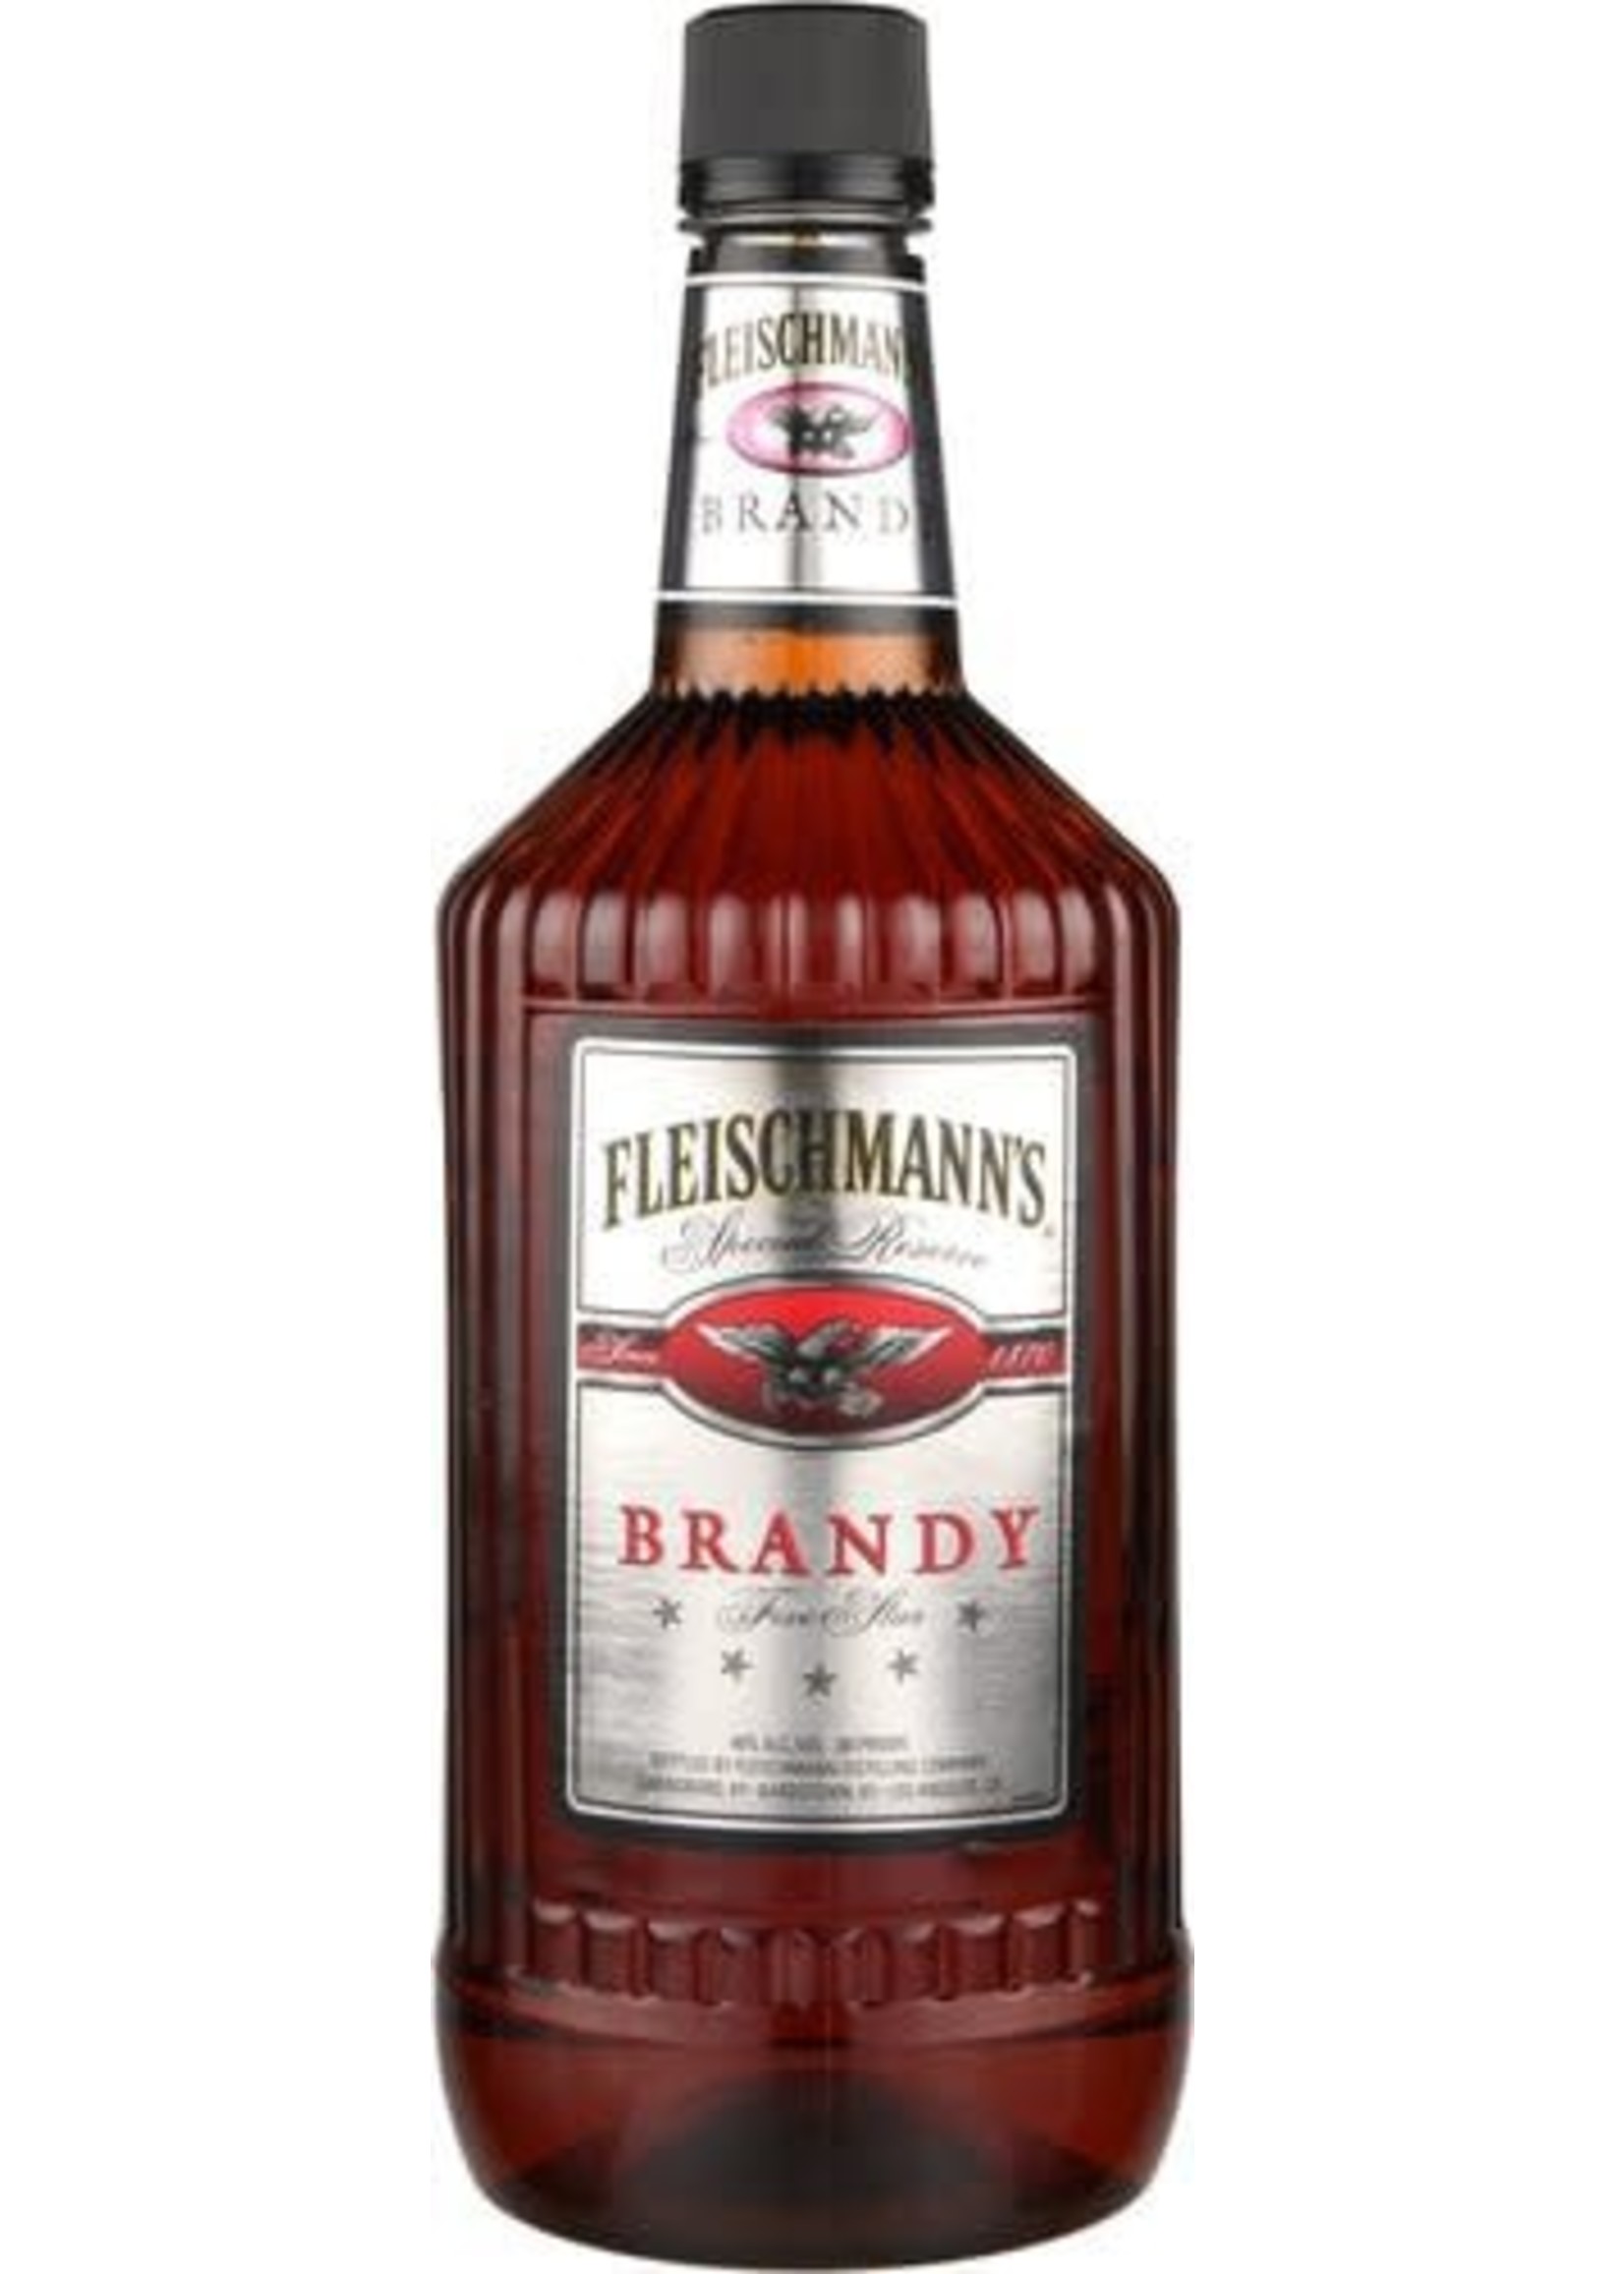 Fleischmann's Brandy 80Proof Pet 1.75 Ltr